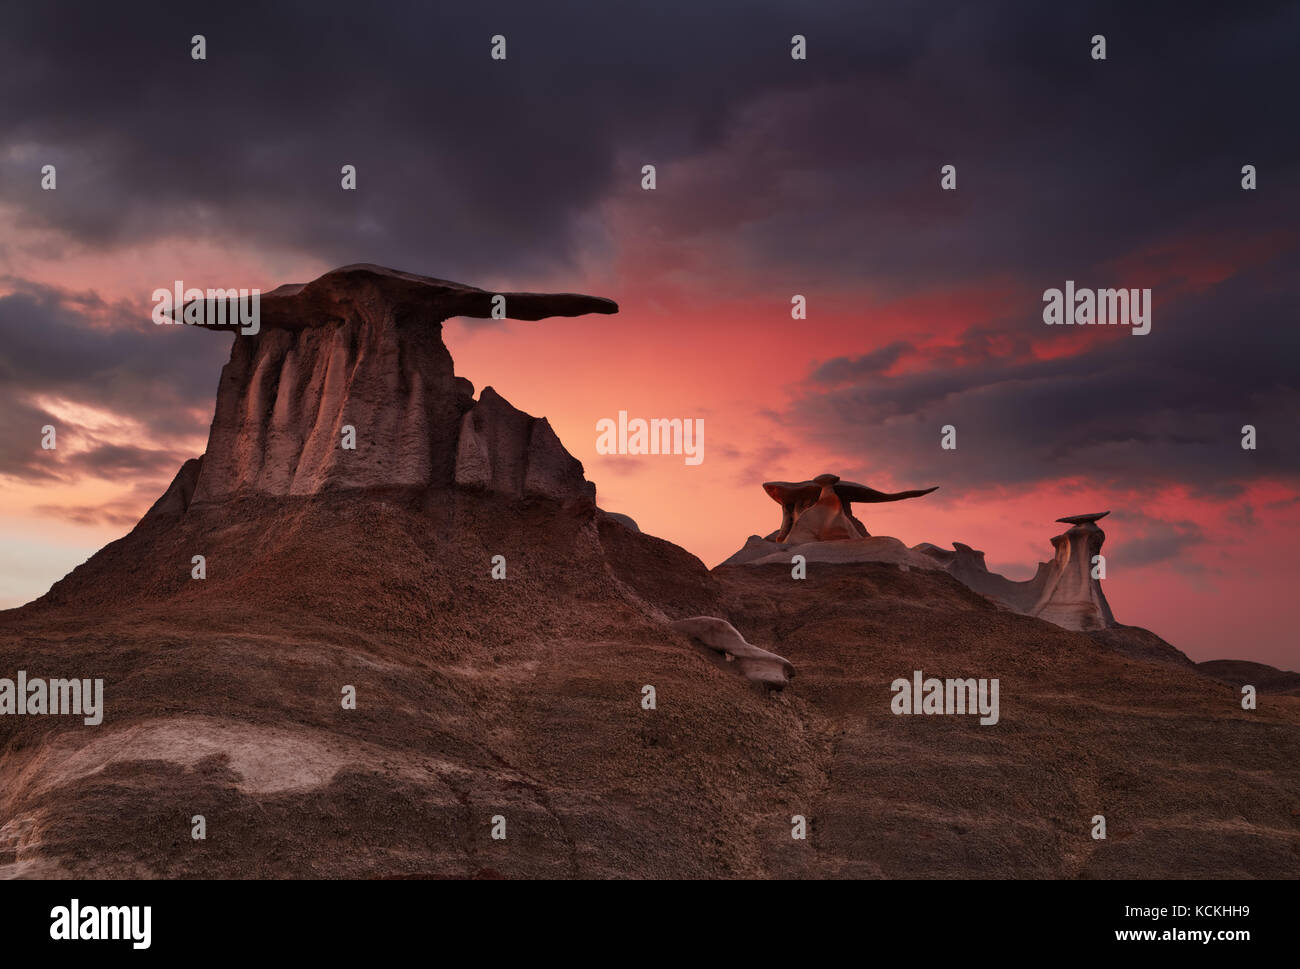 Ailes de pierre, étranges formations rocheuses de bisti badlands, New Mexico, USA Banque D'Images